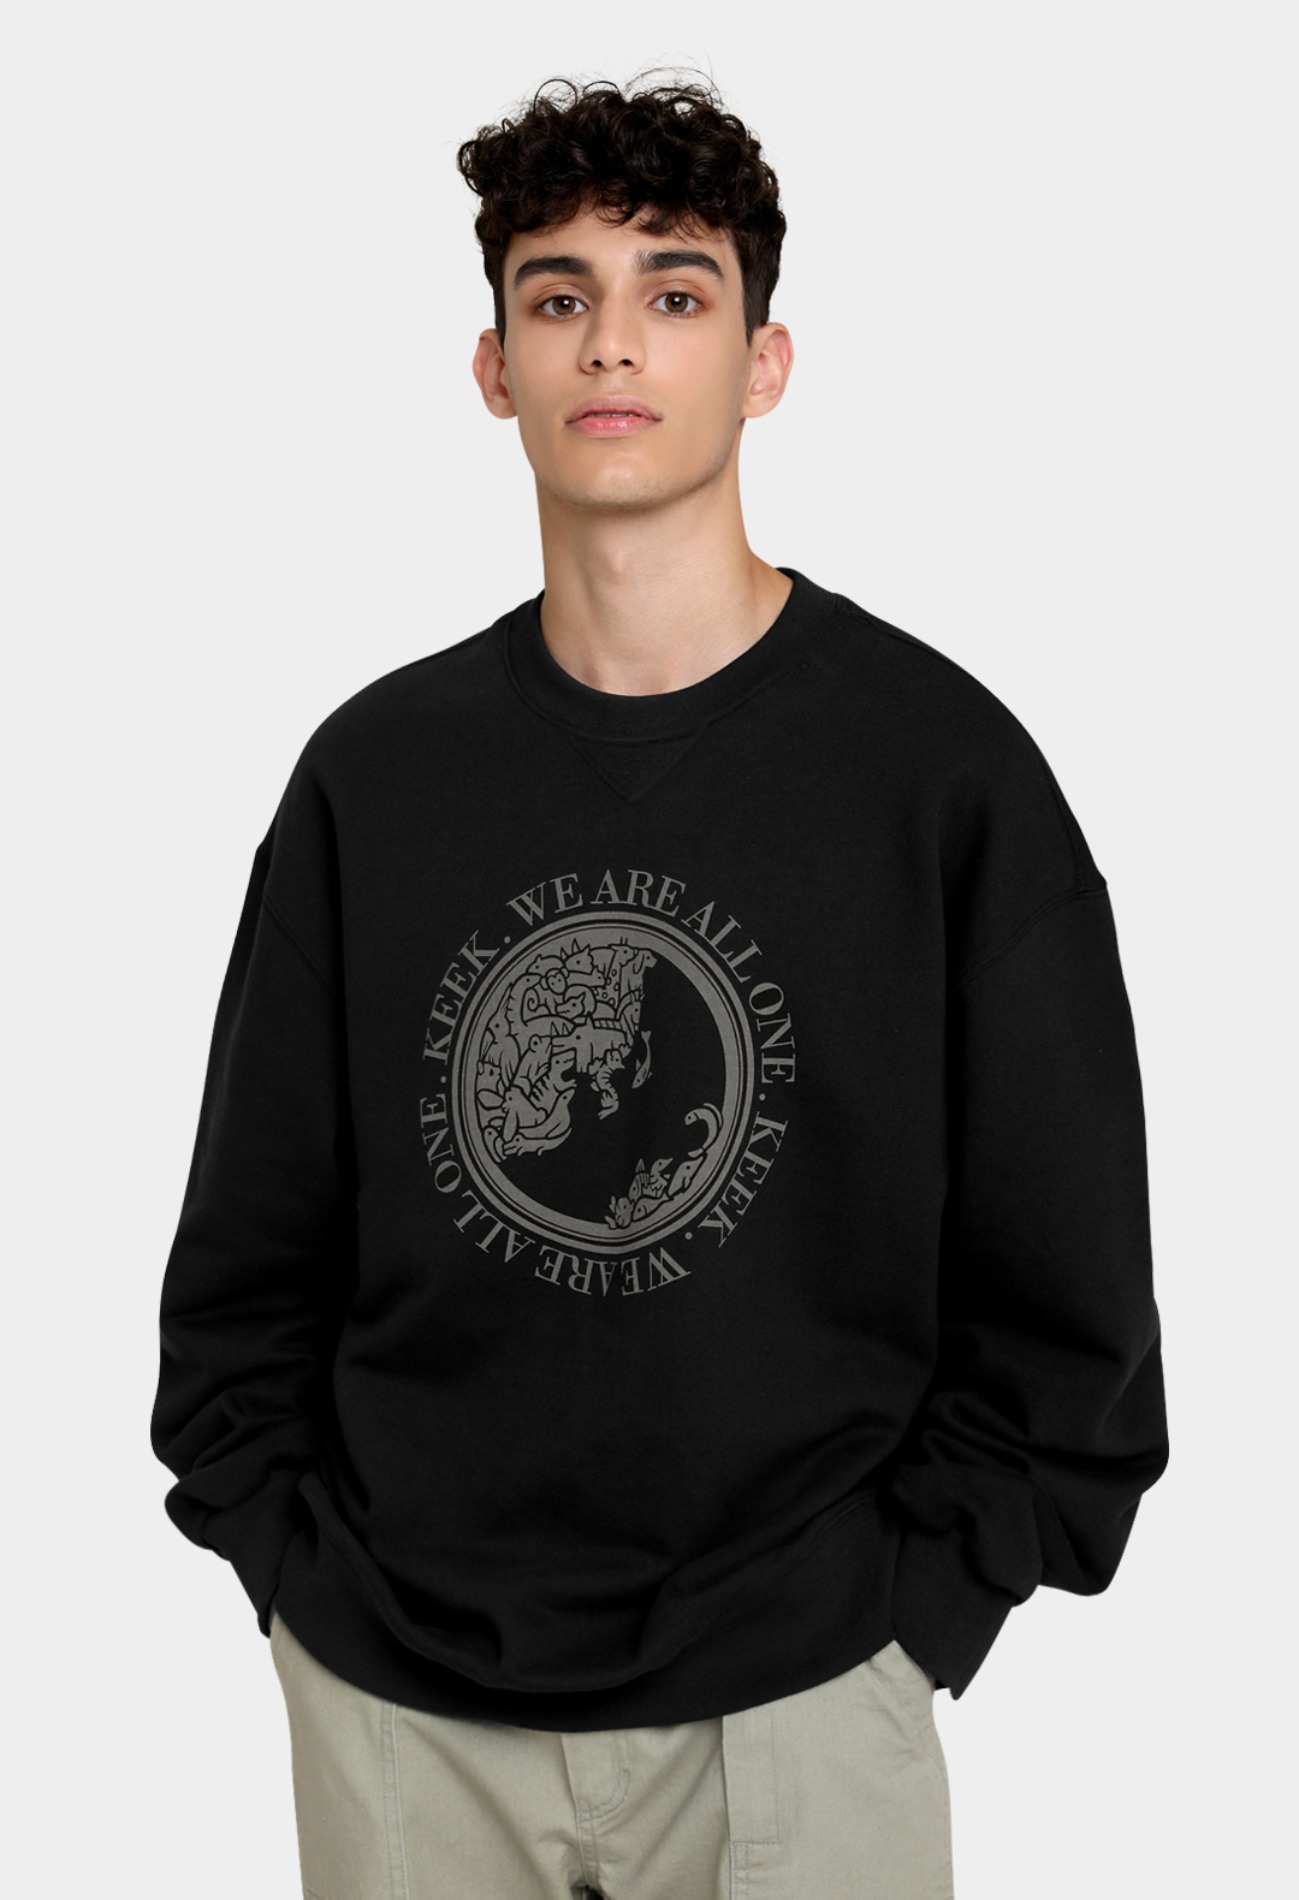 keek [Unisex] Earth Sweatshirts - Black (기모소재) 스트릿패션 유니섹스브랜드 커플시밀러룩 남자쇼핑몰 여성의류쇼핑몰 후드티 힙색